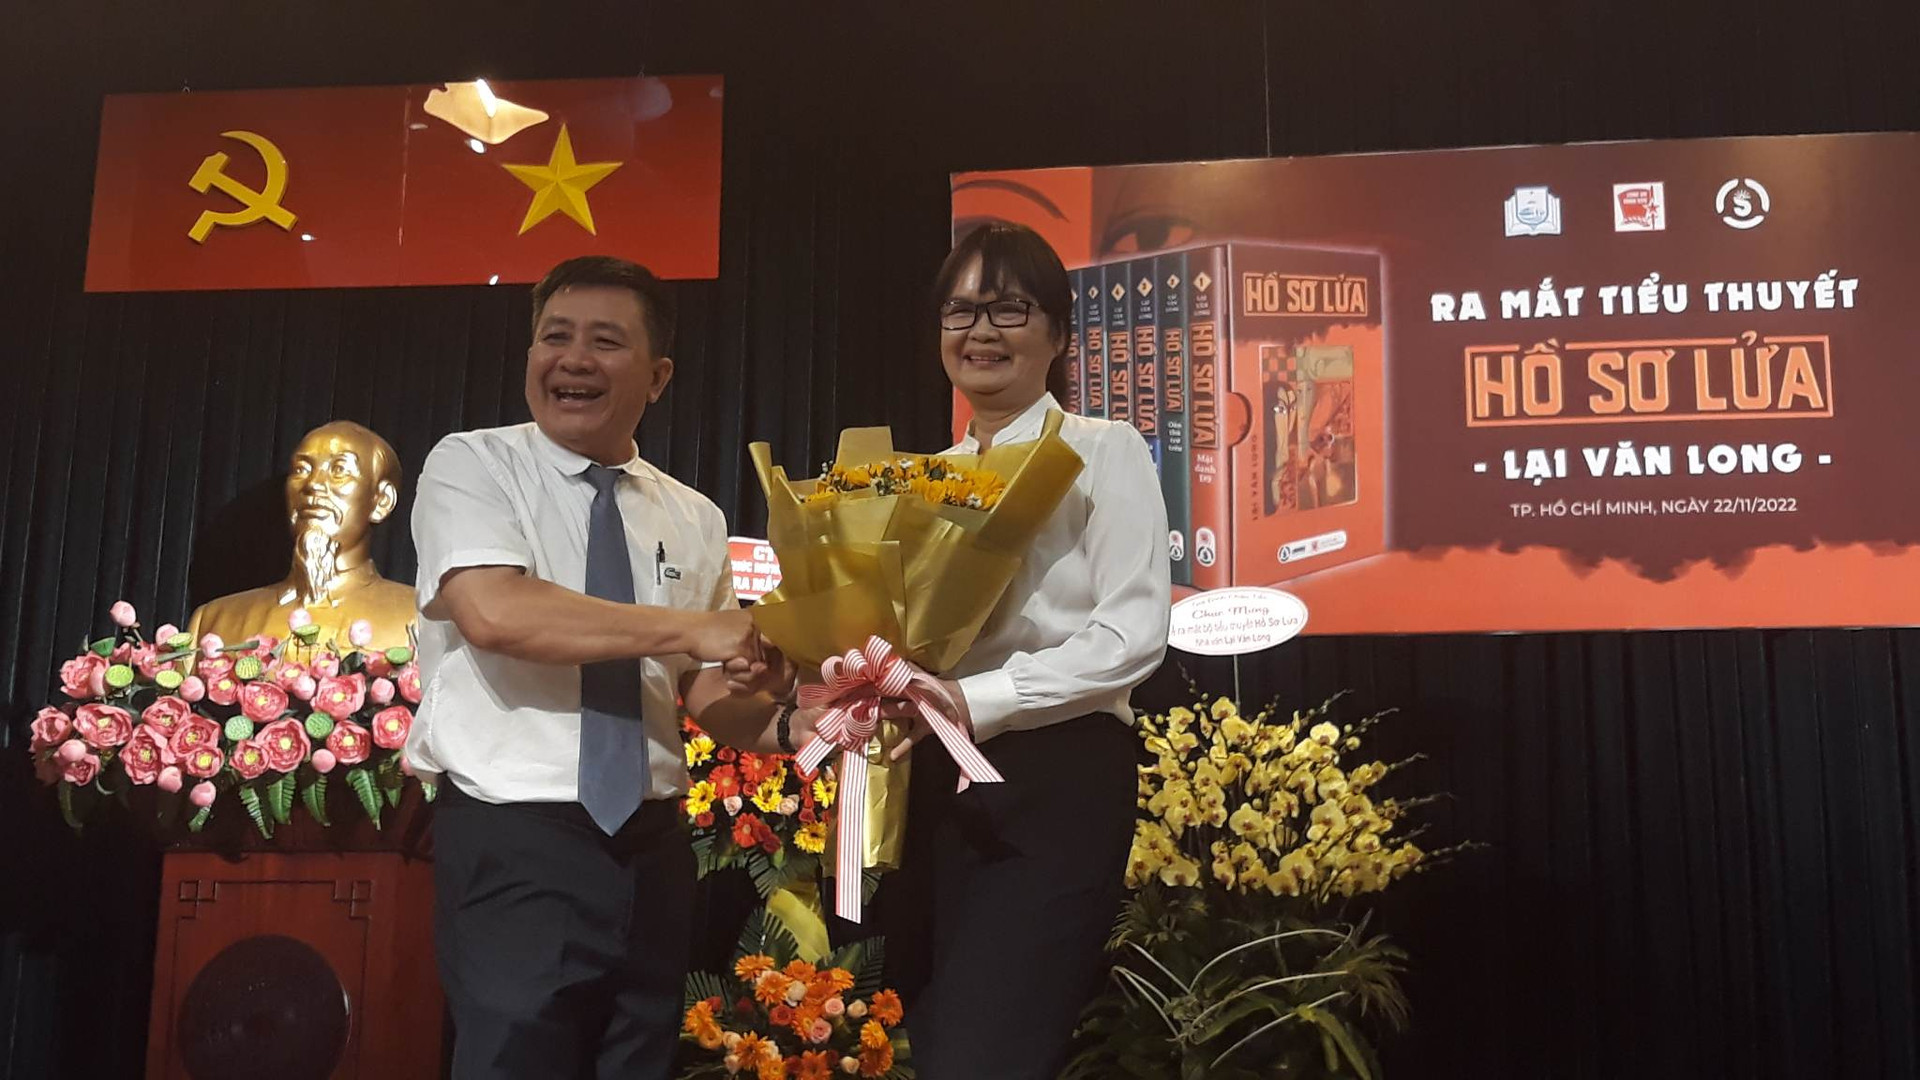 Nhà văn Trịnh Bích Ngân, Chủ tịch Hội Nhà văn TP HCM (bên phải ảnh) tặng hoa cho Nhà văn Lại Văn Long tại buổi lễ.